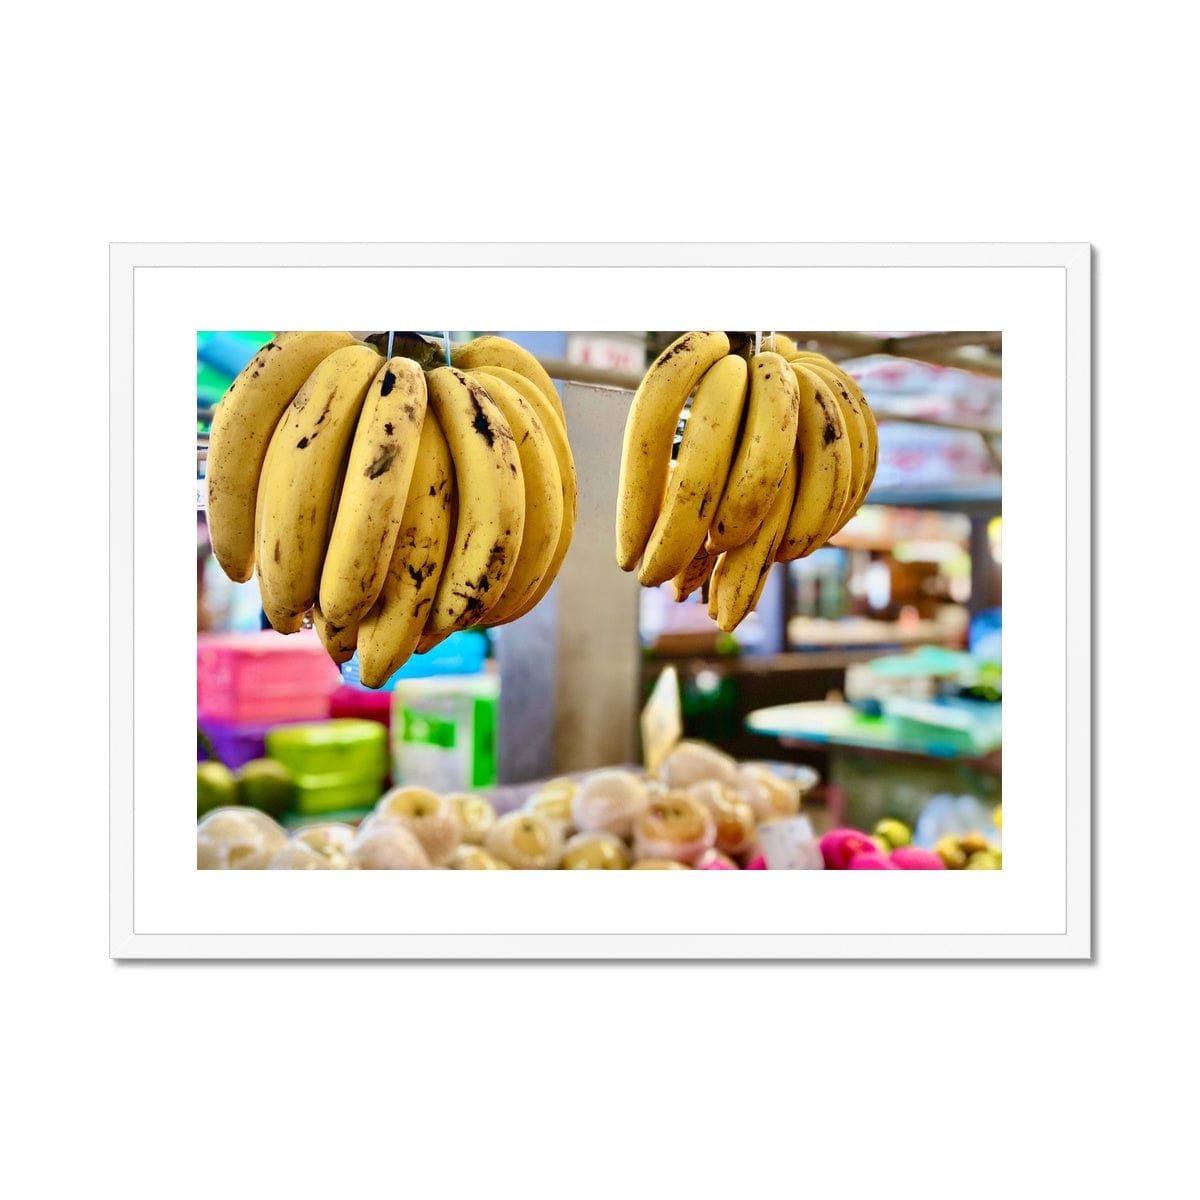 Adam Davies Framed A4 Landscape (29x21cm) / White Frame Going Bananas Thai Market Framed & Mounted Print